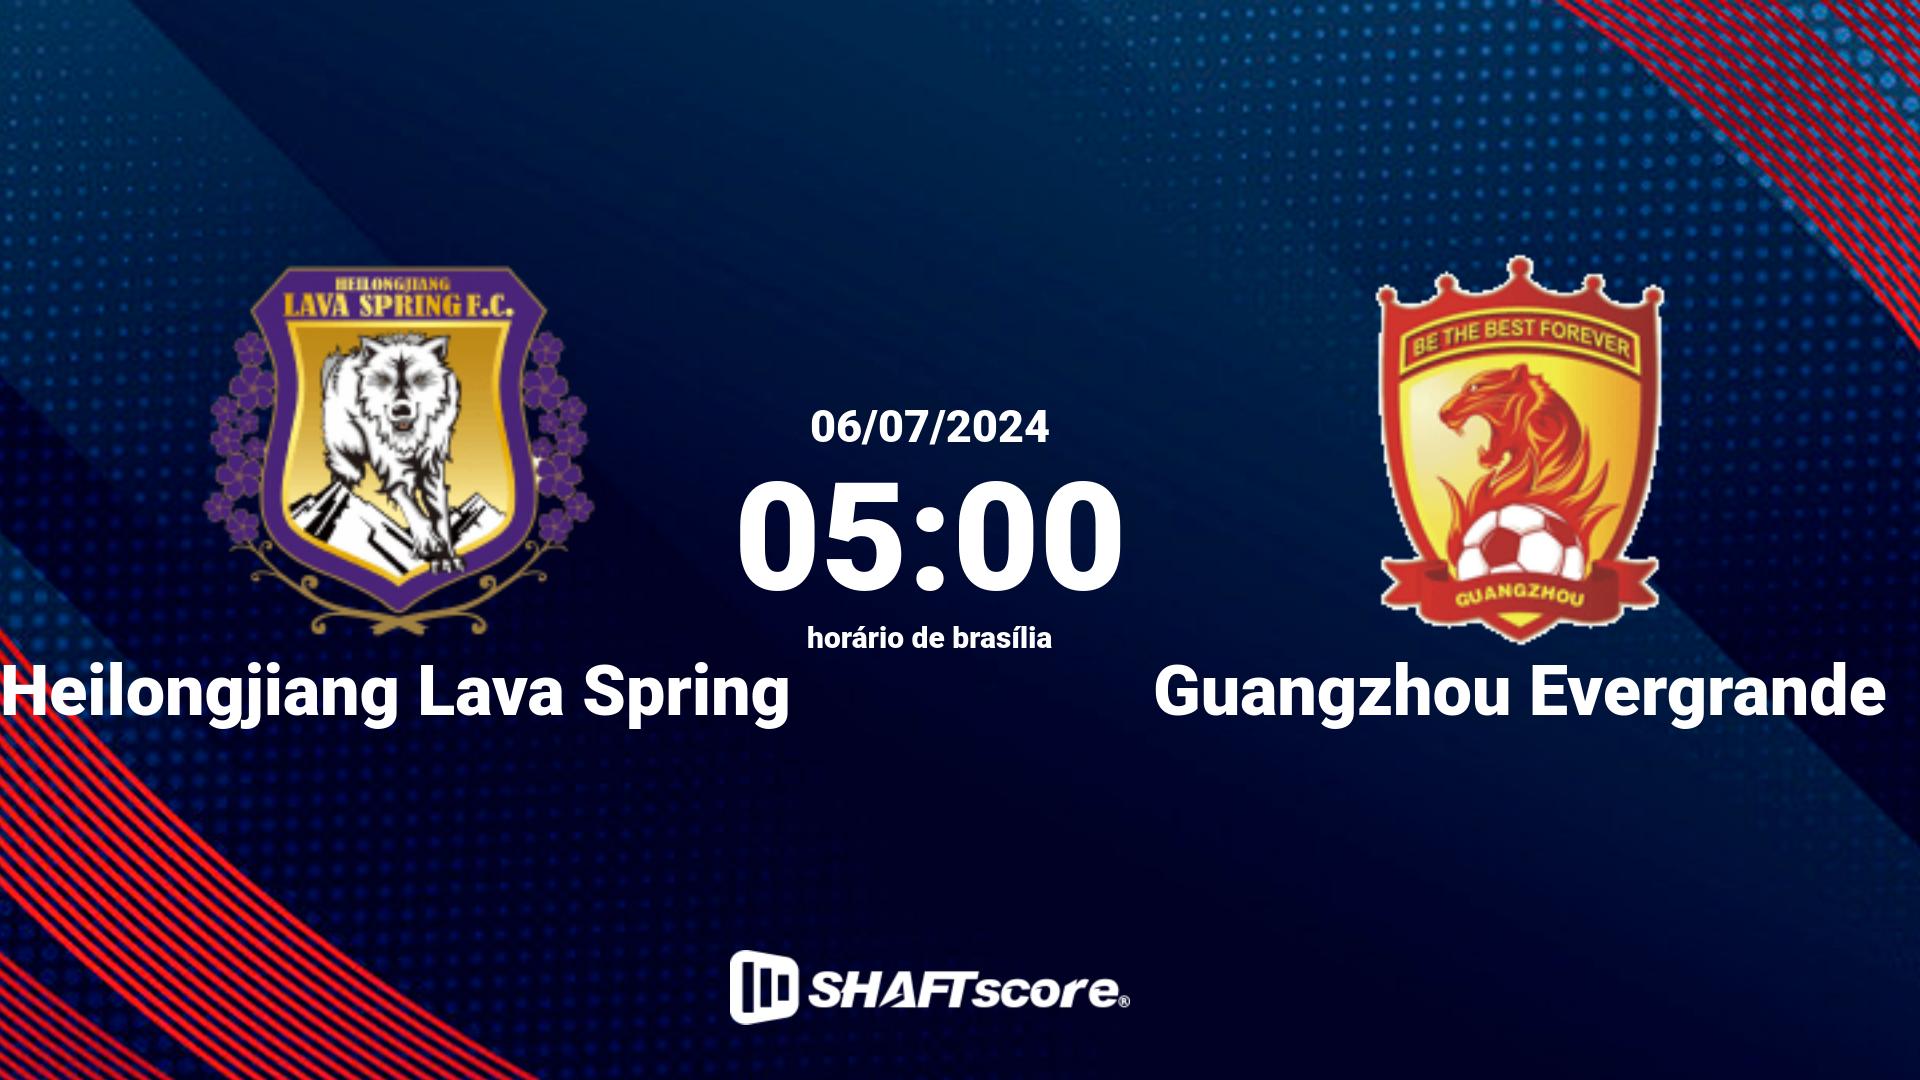 Estatísticas do jogo Heilongjiang Lava Spring vs Guangzhou Evergrande 06.07 05:00